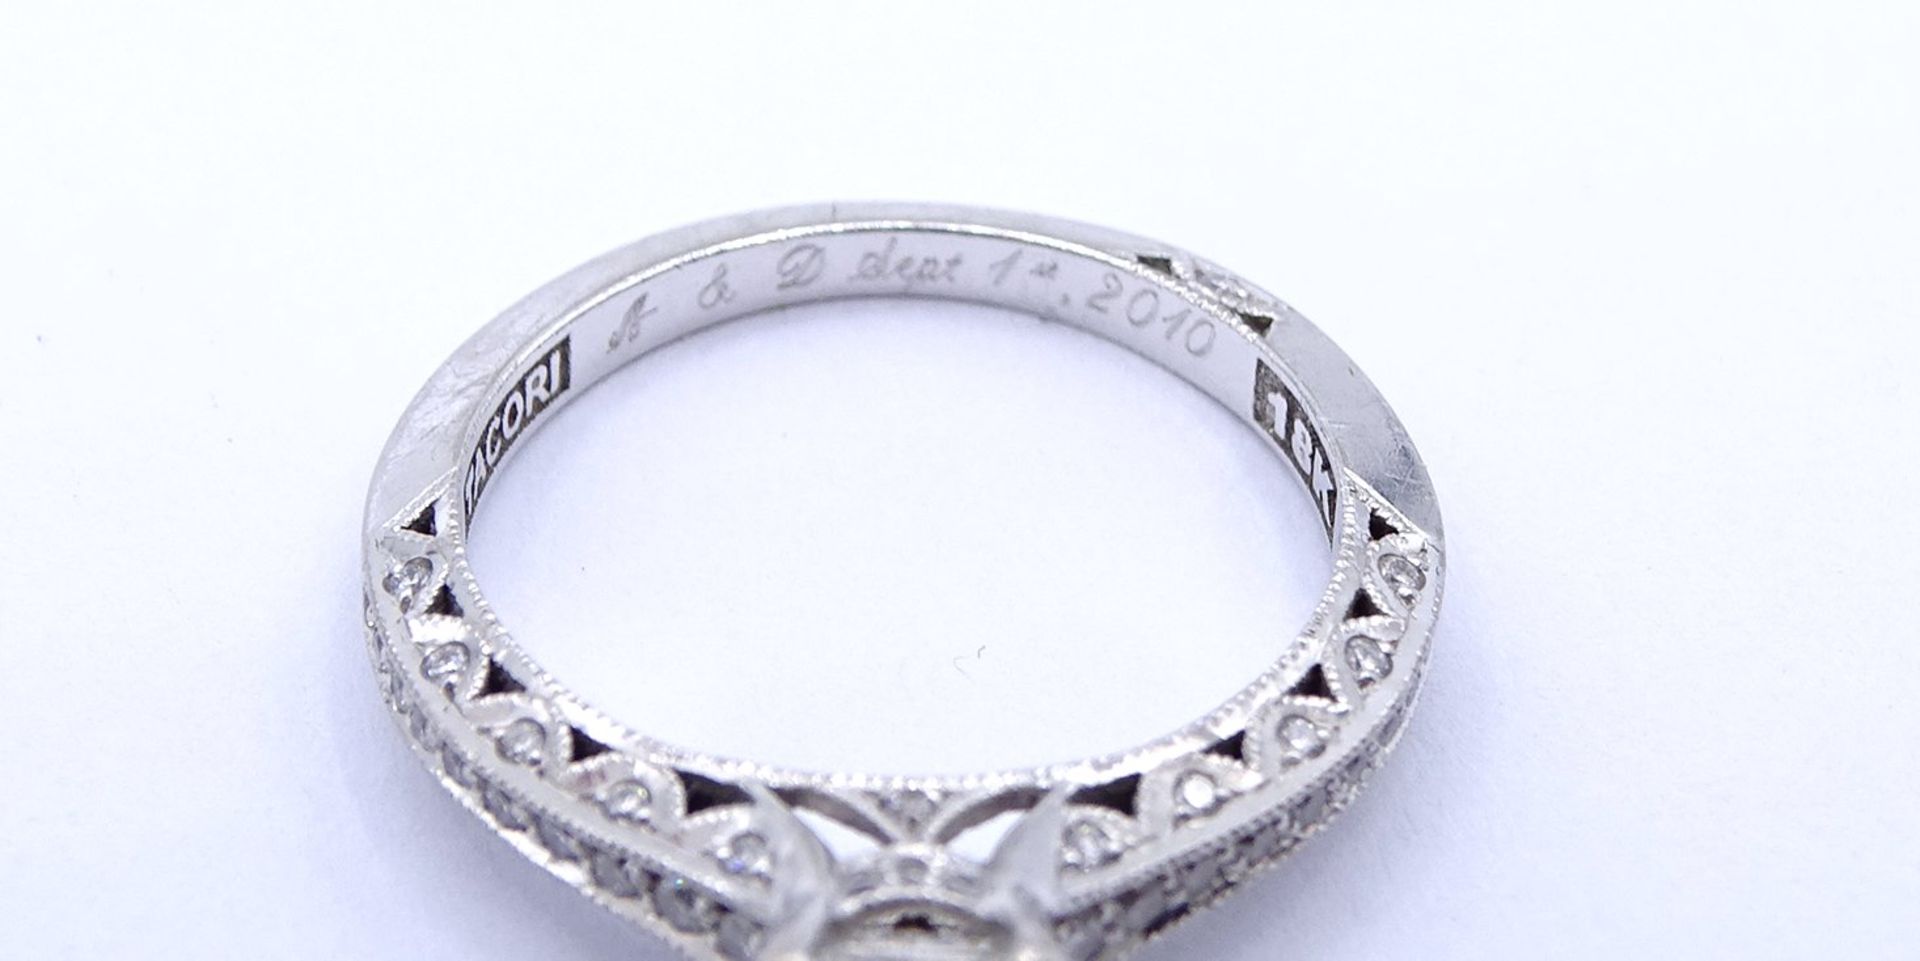 Princess Cut Ring - Verlobungsring , Princess 1,0ct., und 47 kl. Diamanten si, G-H, WG 18K "Tacori" - Image 11 of 20